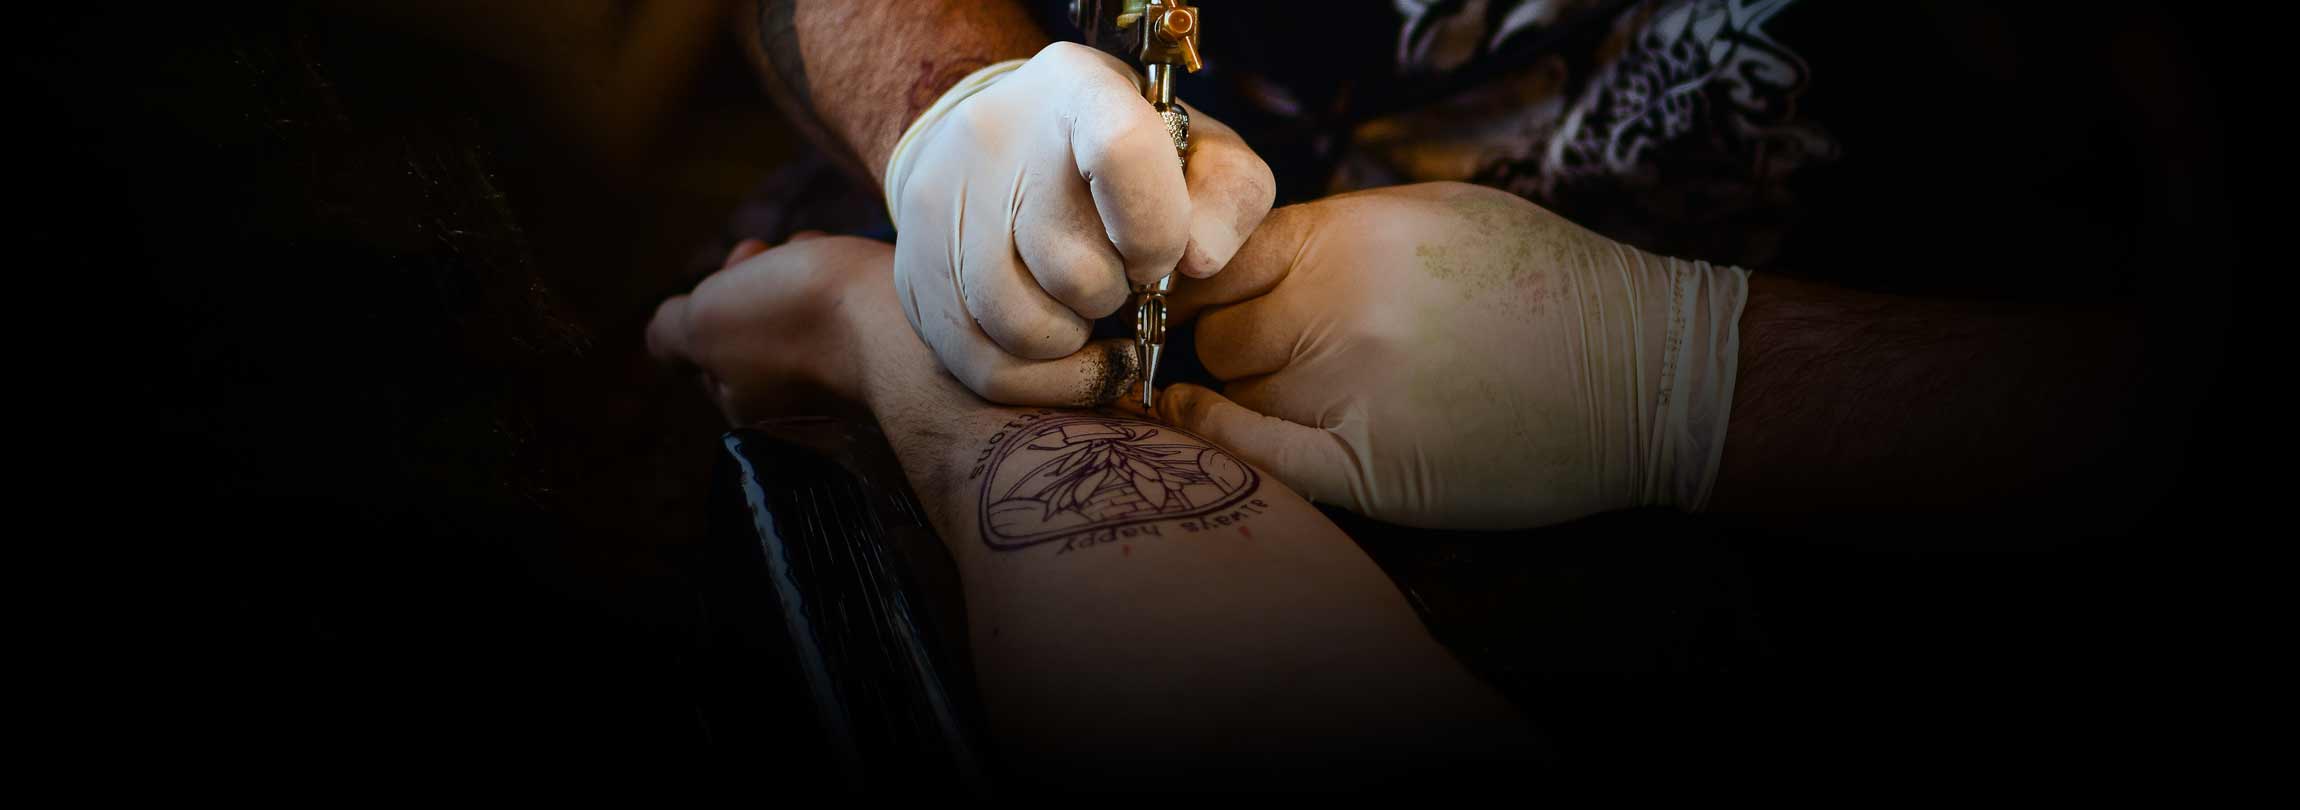 Tatuagens e piercing: o que pensar à luz da moral católica?